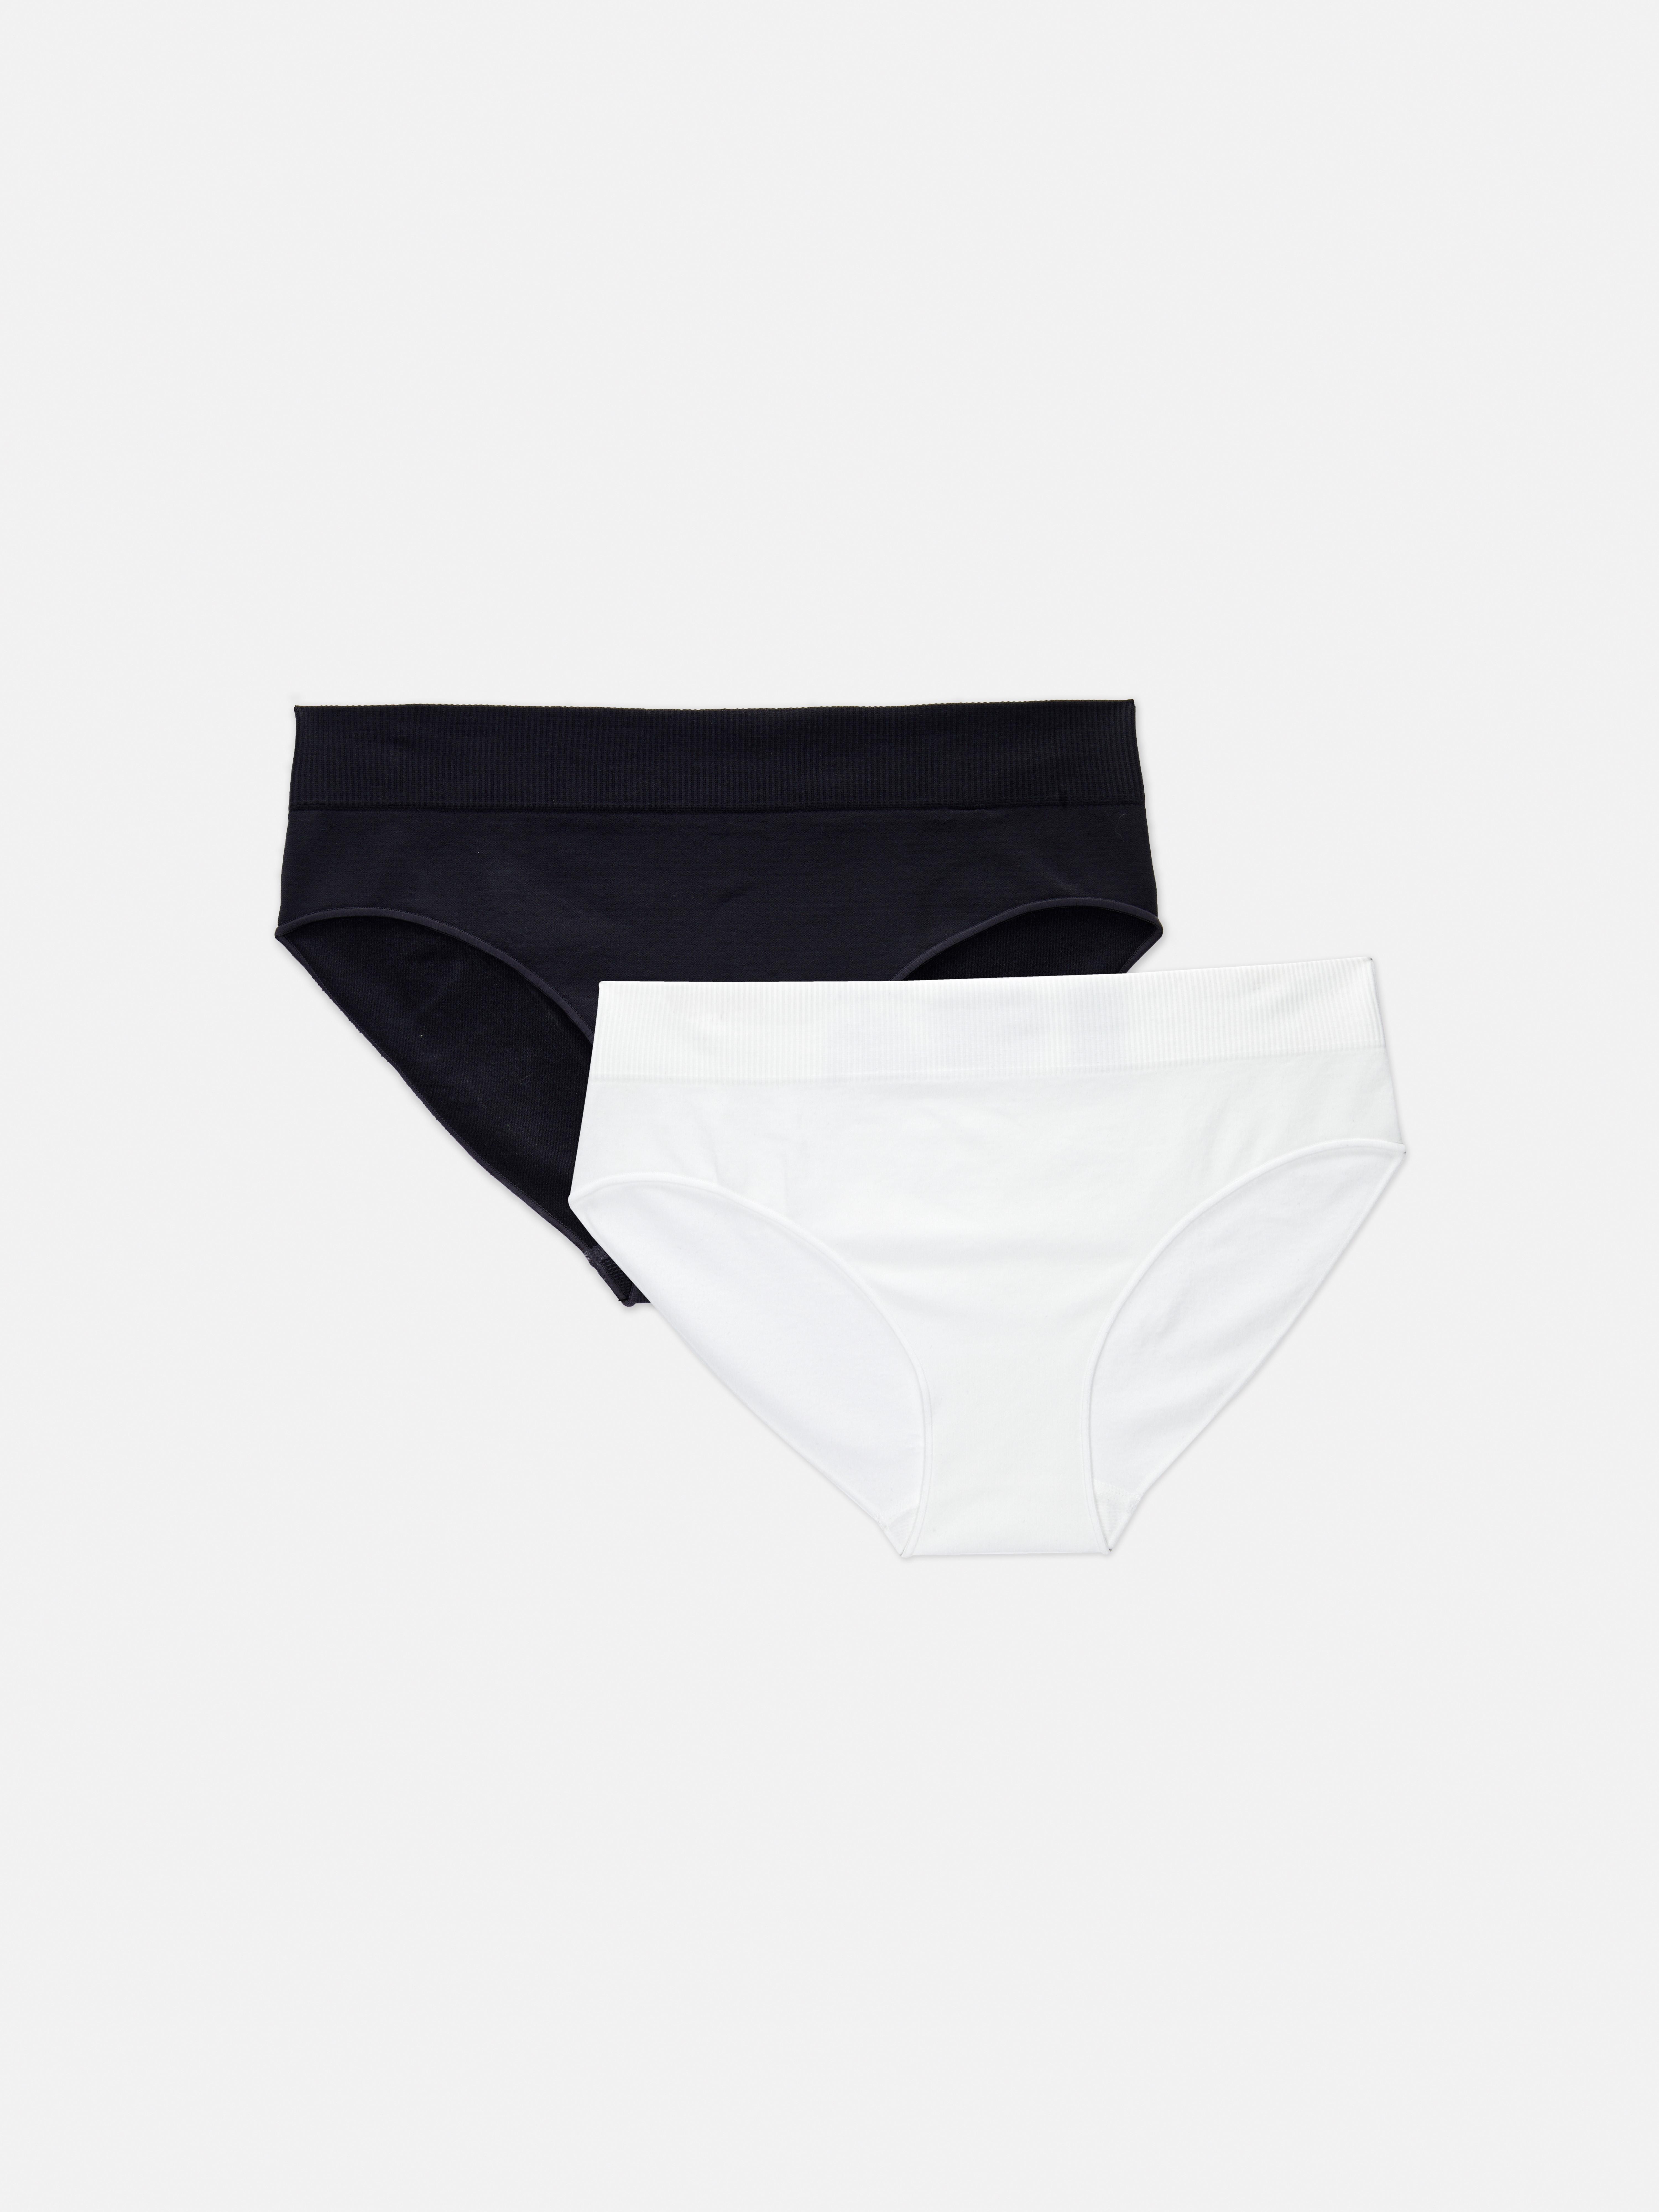 Mini Briefs Knickers Primark Underwear Ladies Womens Cotton